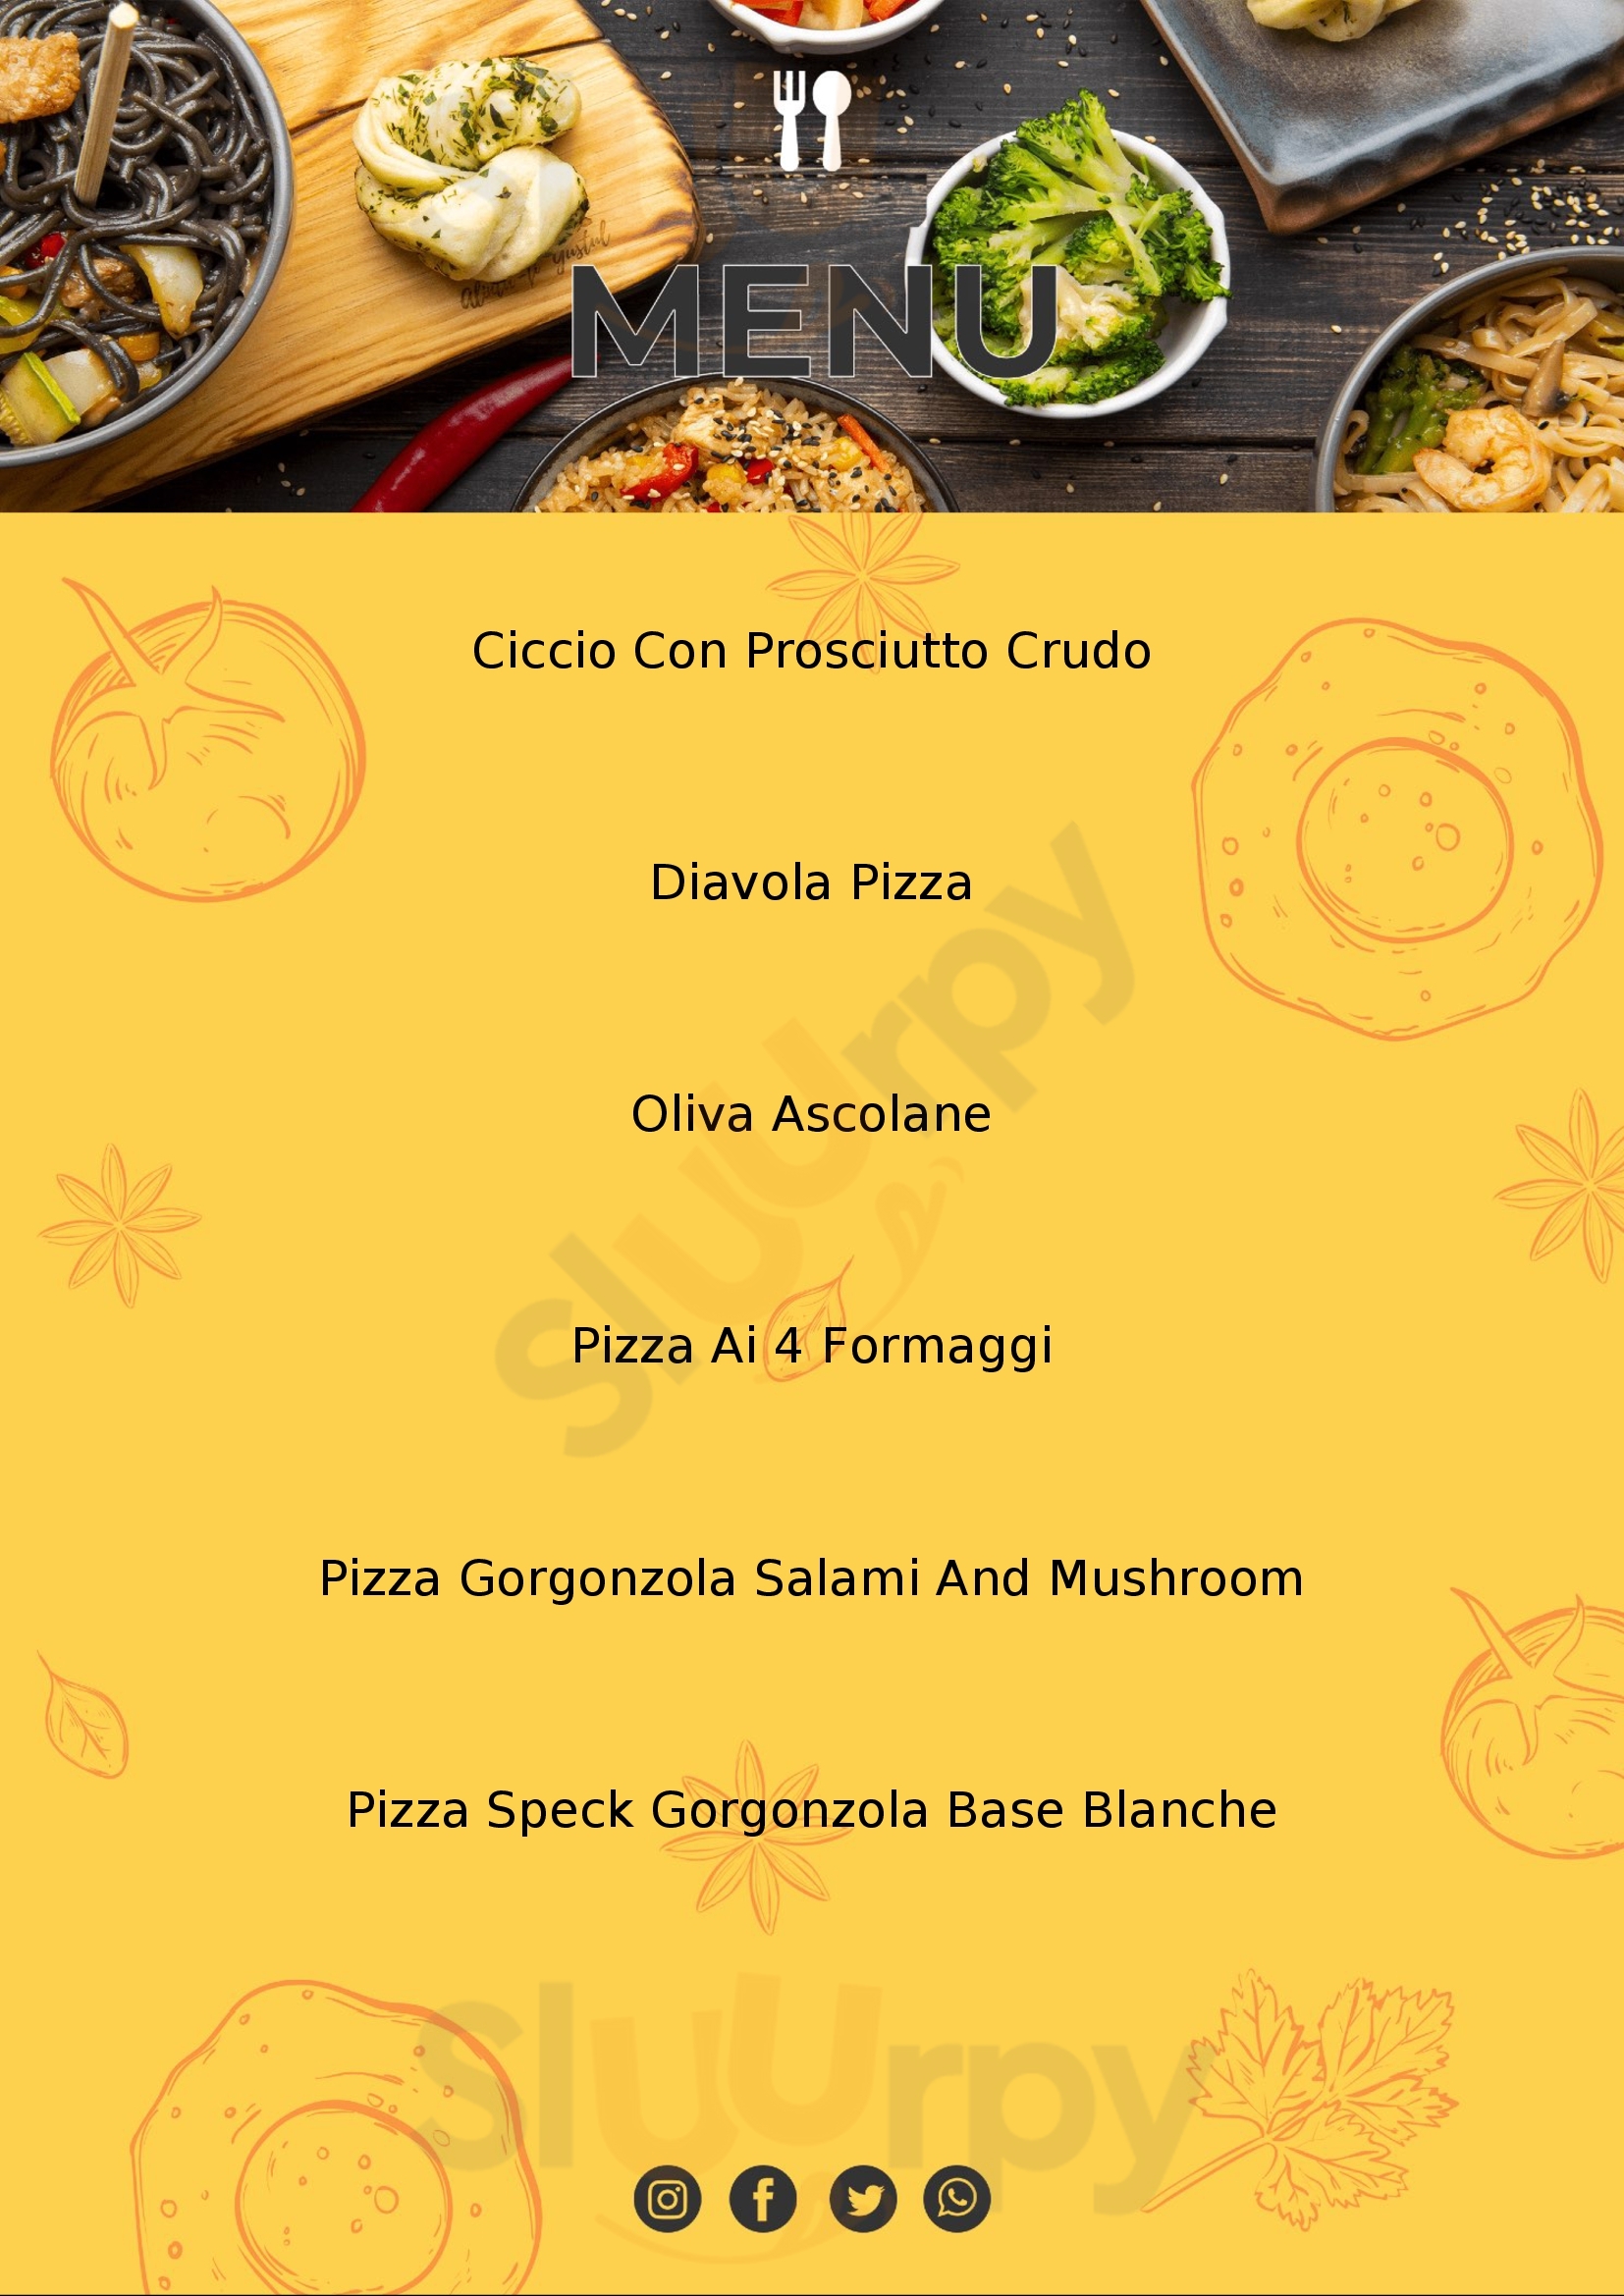 Poldo's Pizza Ancona menù 1 pagina